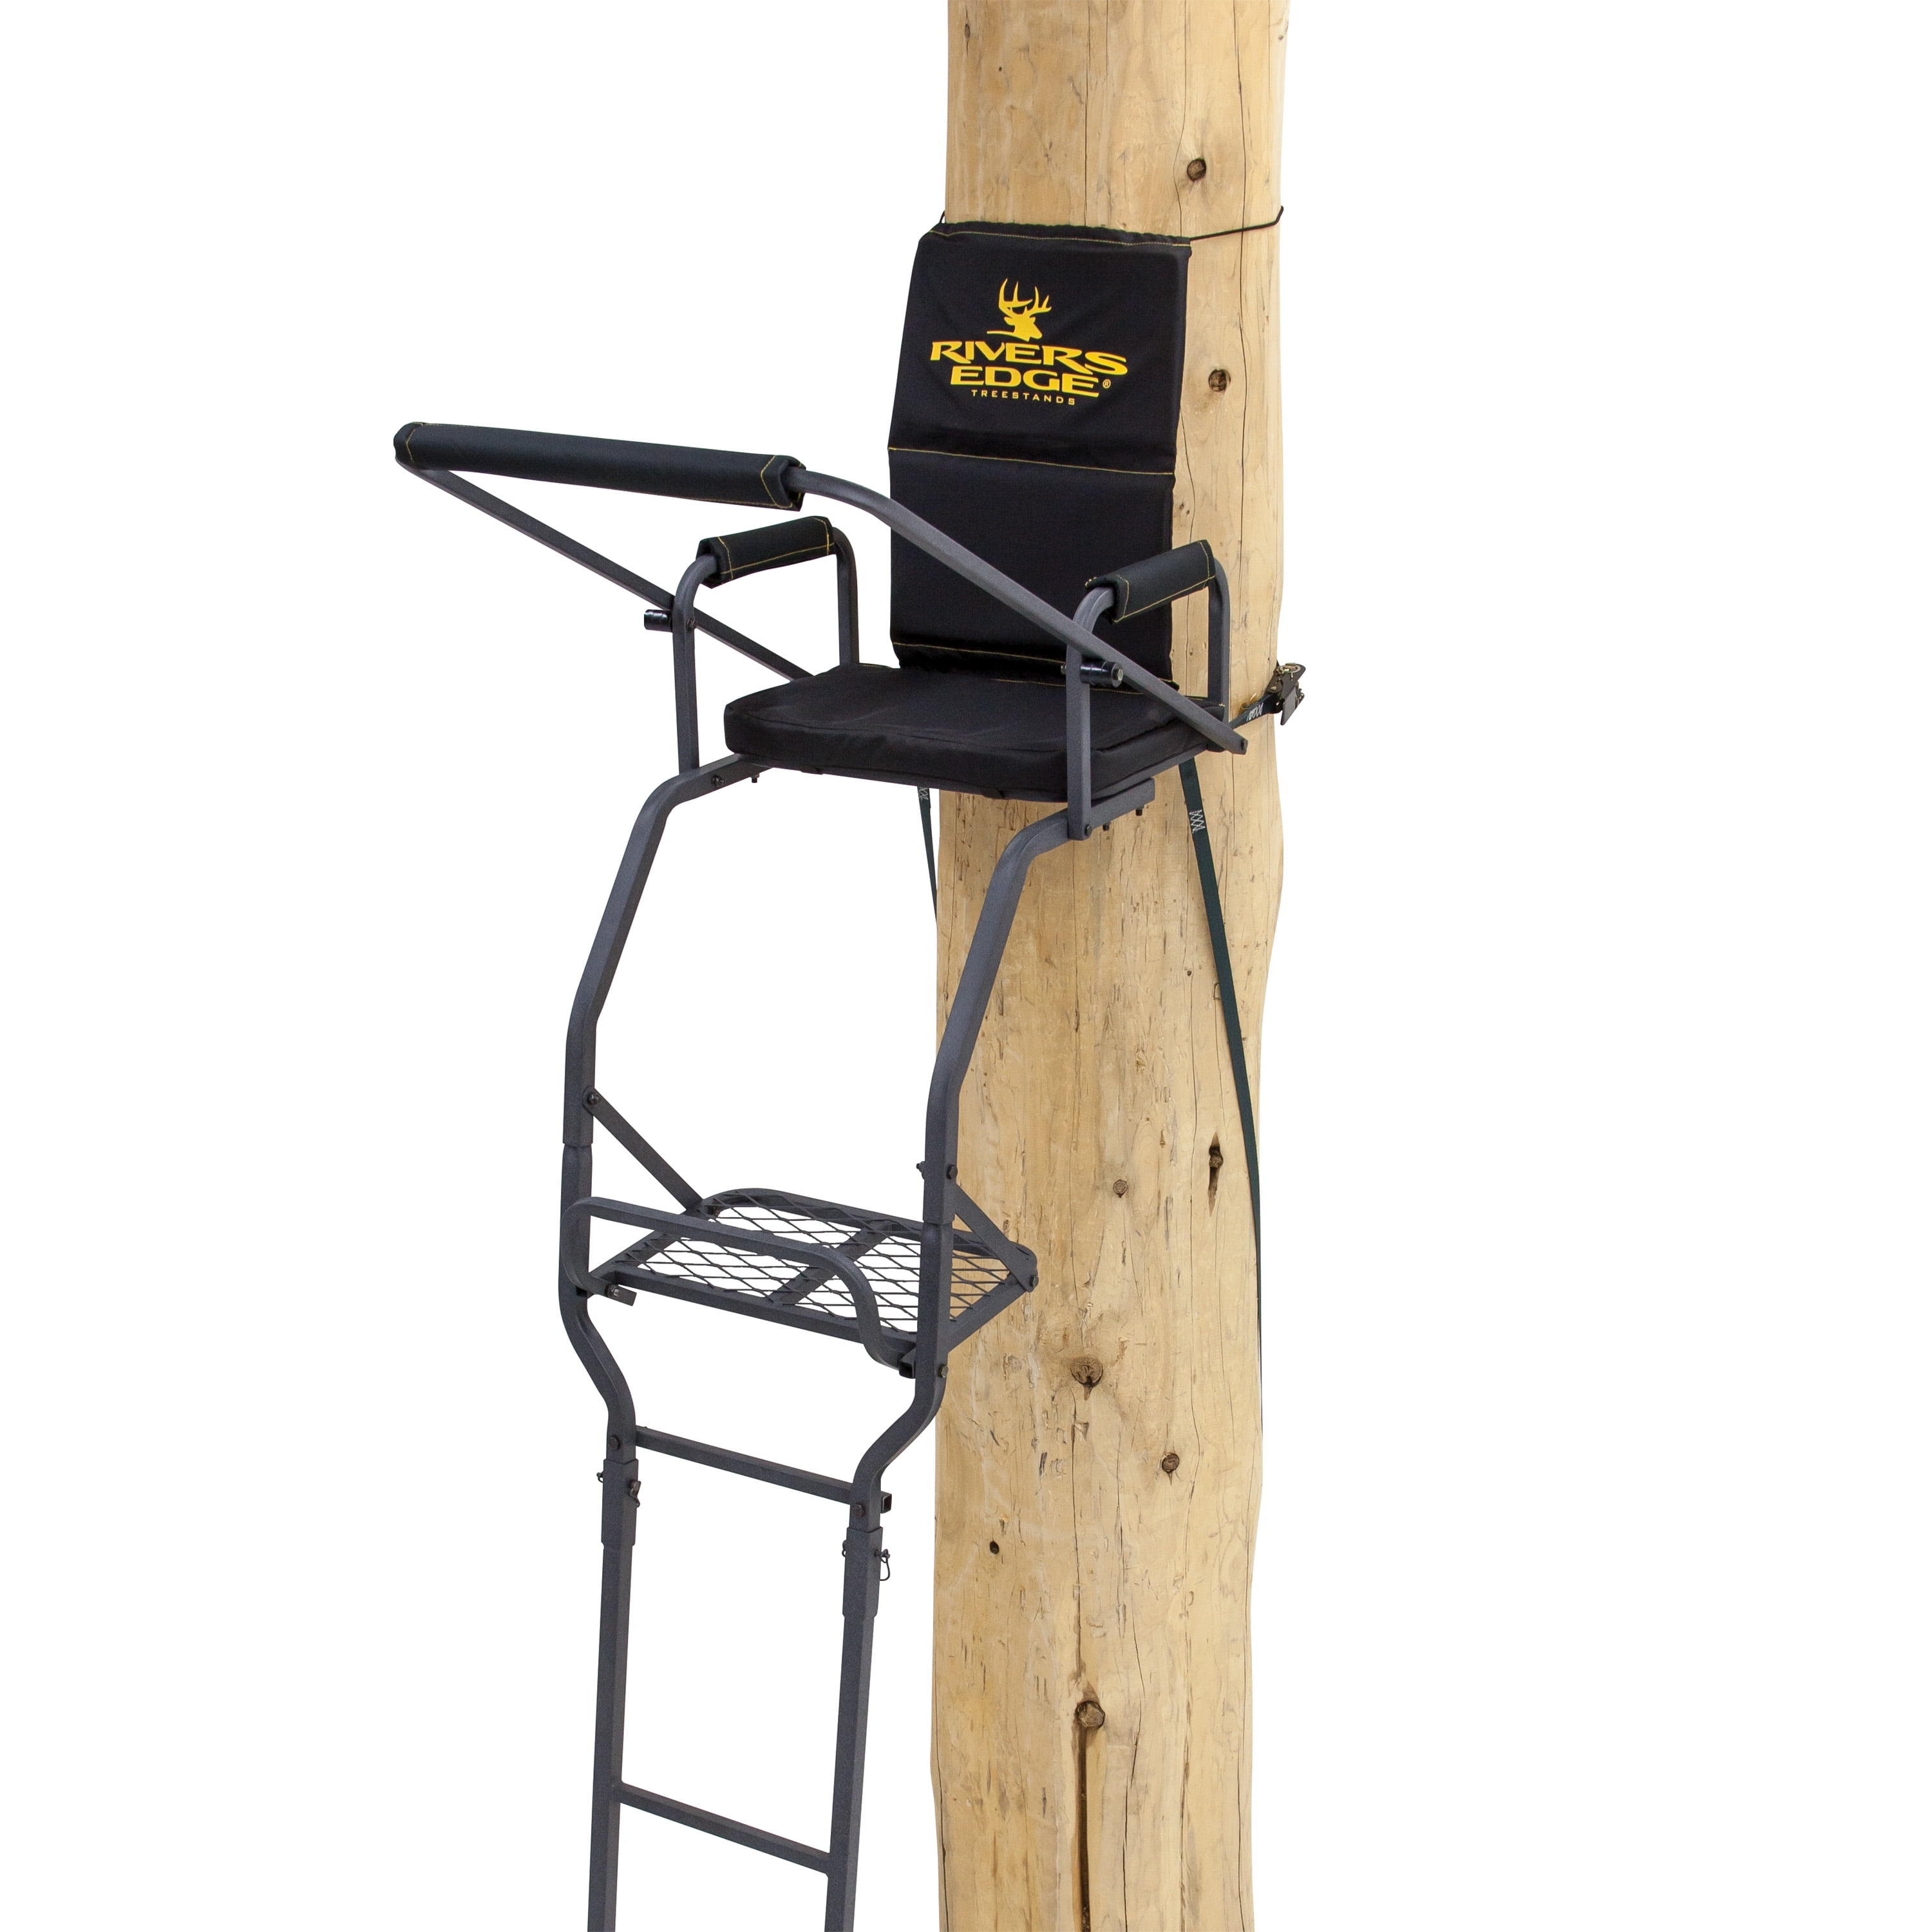 Big Dog Hunting Adjustable Ladder Support Bar Kit Hunting Tree Stand Black 